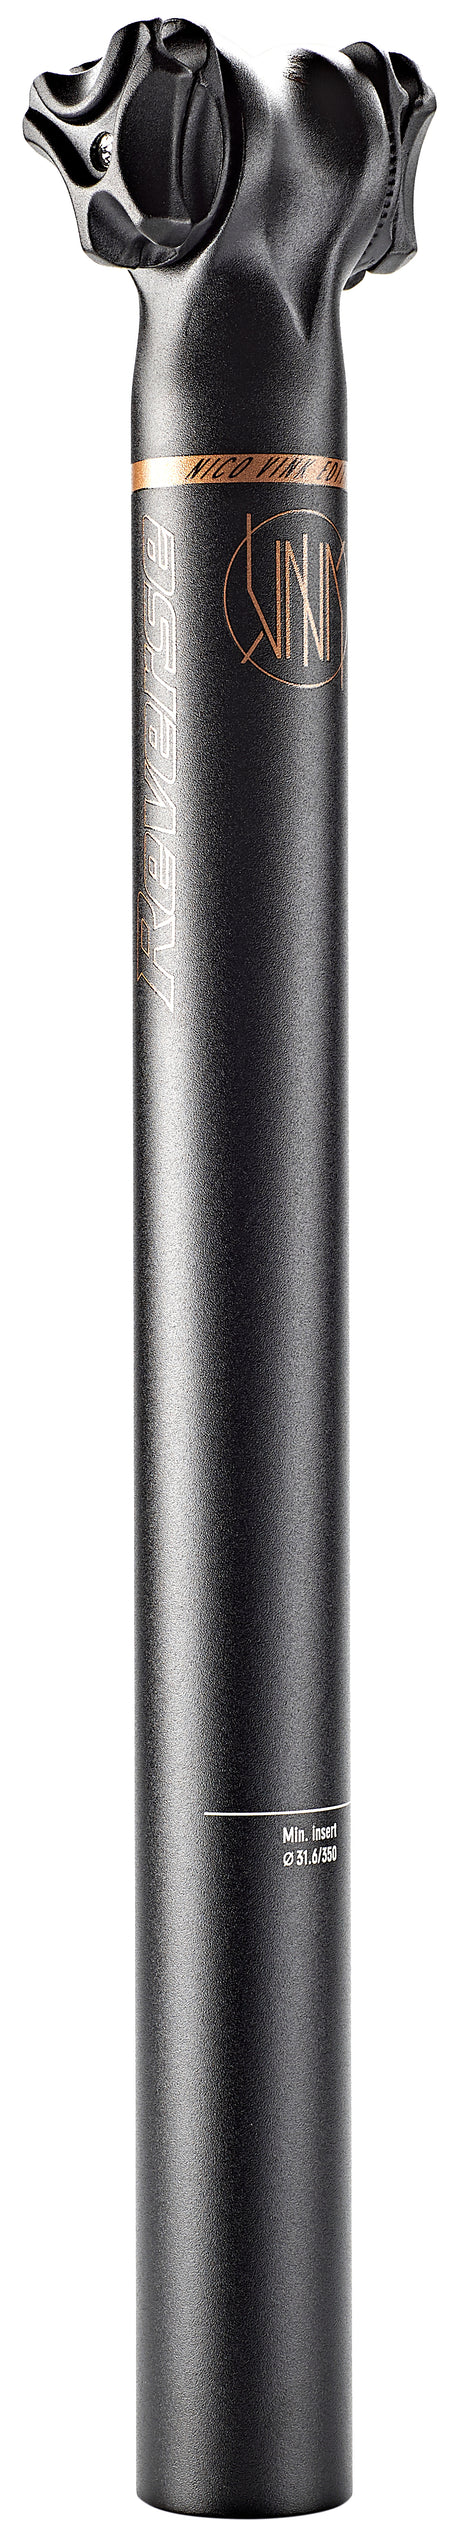 Omgekeerde Nico Vink zadelpen Ø31,6mm zwart/bruin